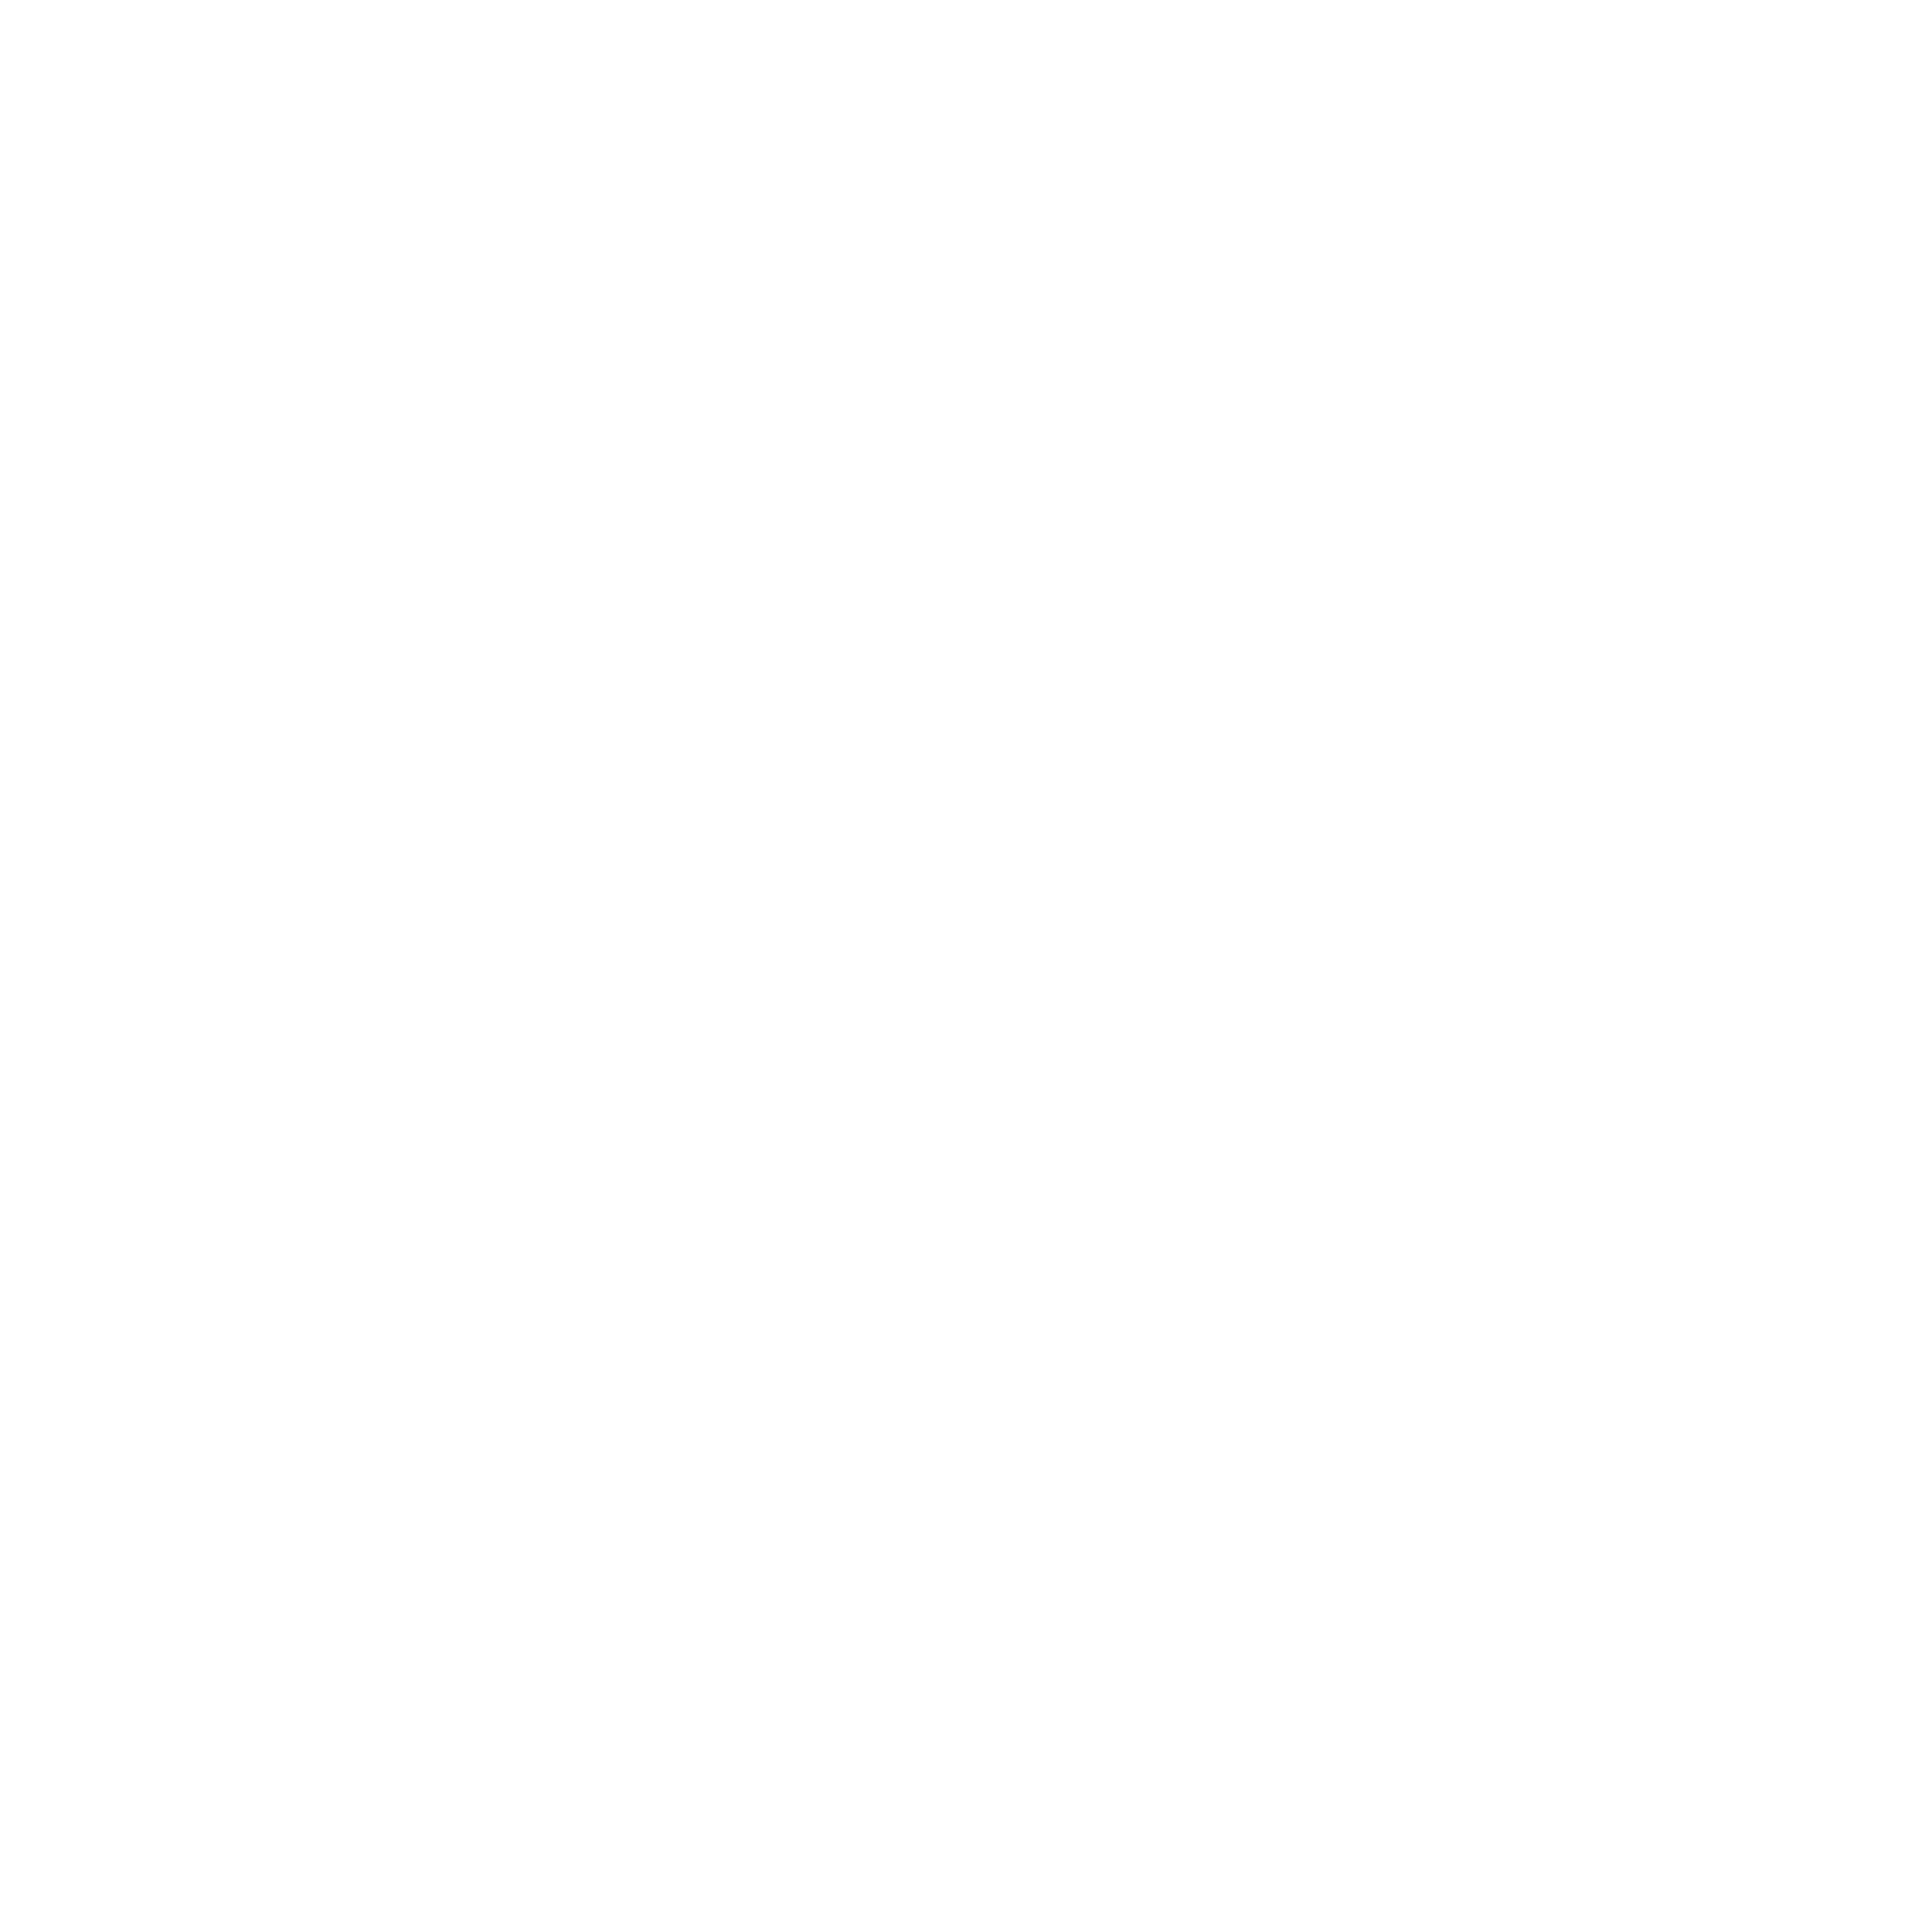 Musicbar Amstetten